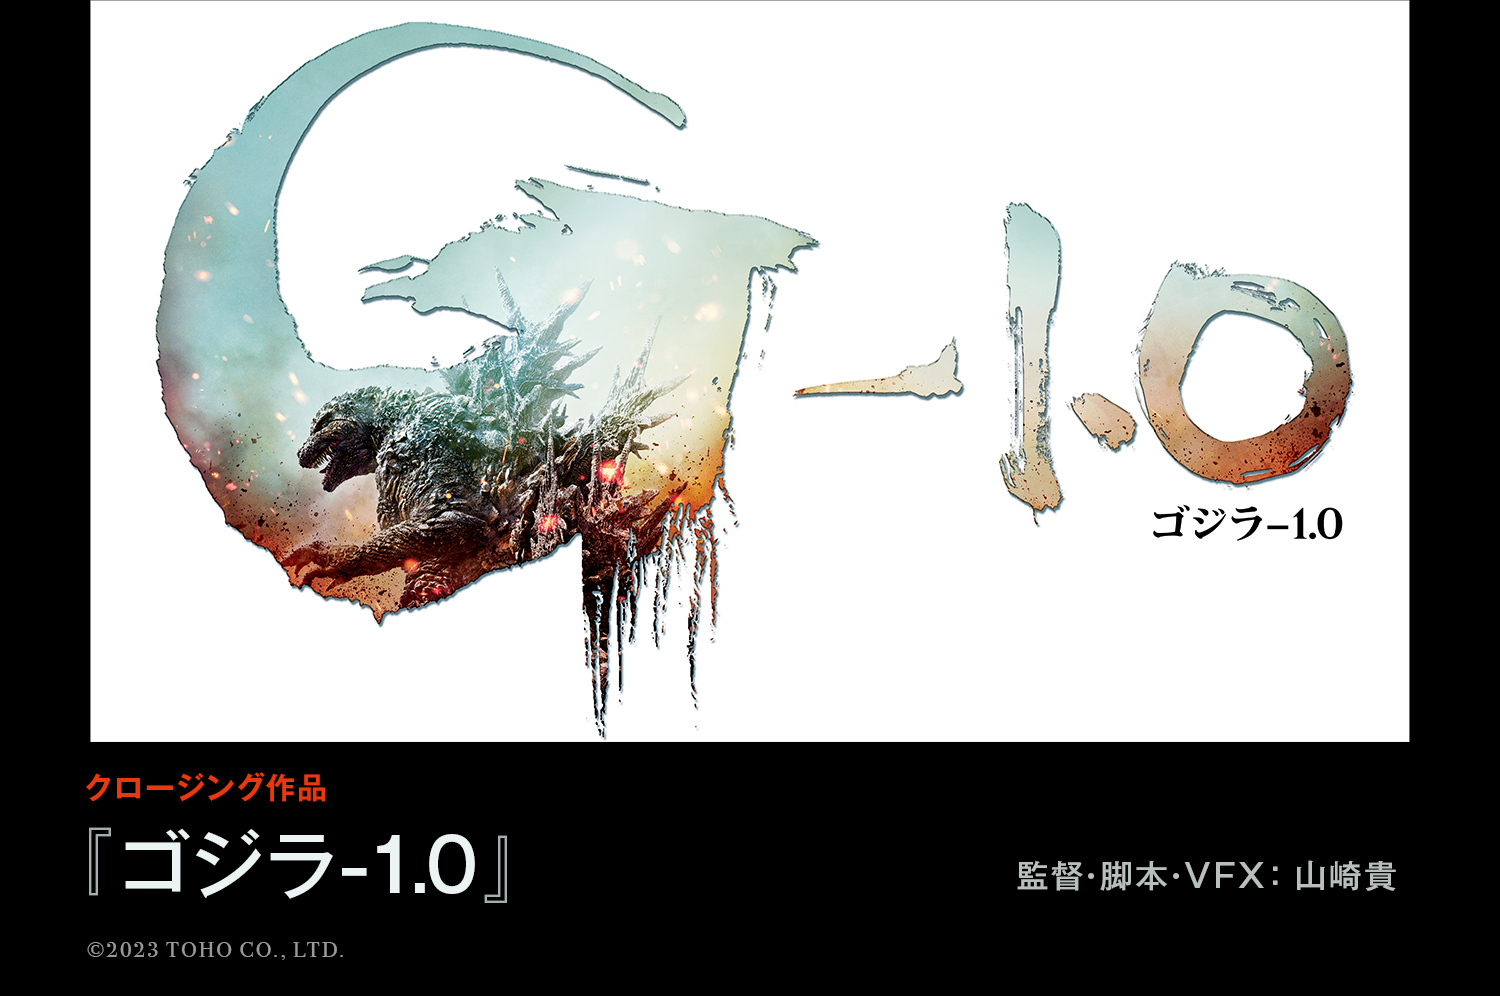 第36回東京国際映画祭 クロージング作品『『ゴジラ-1.0』に決定！！